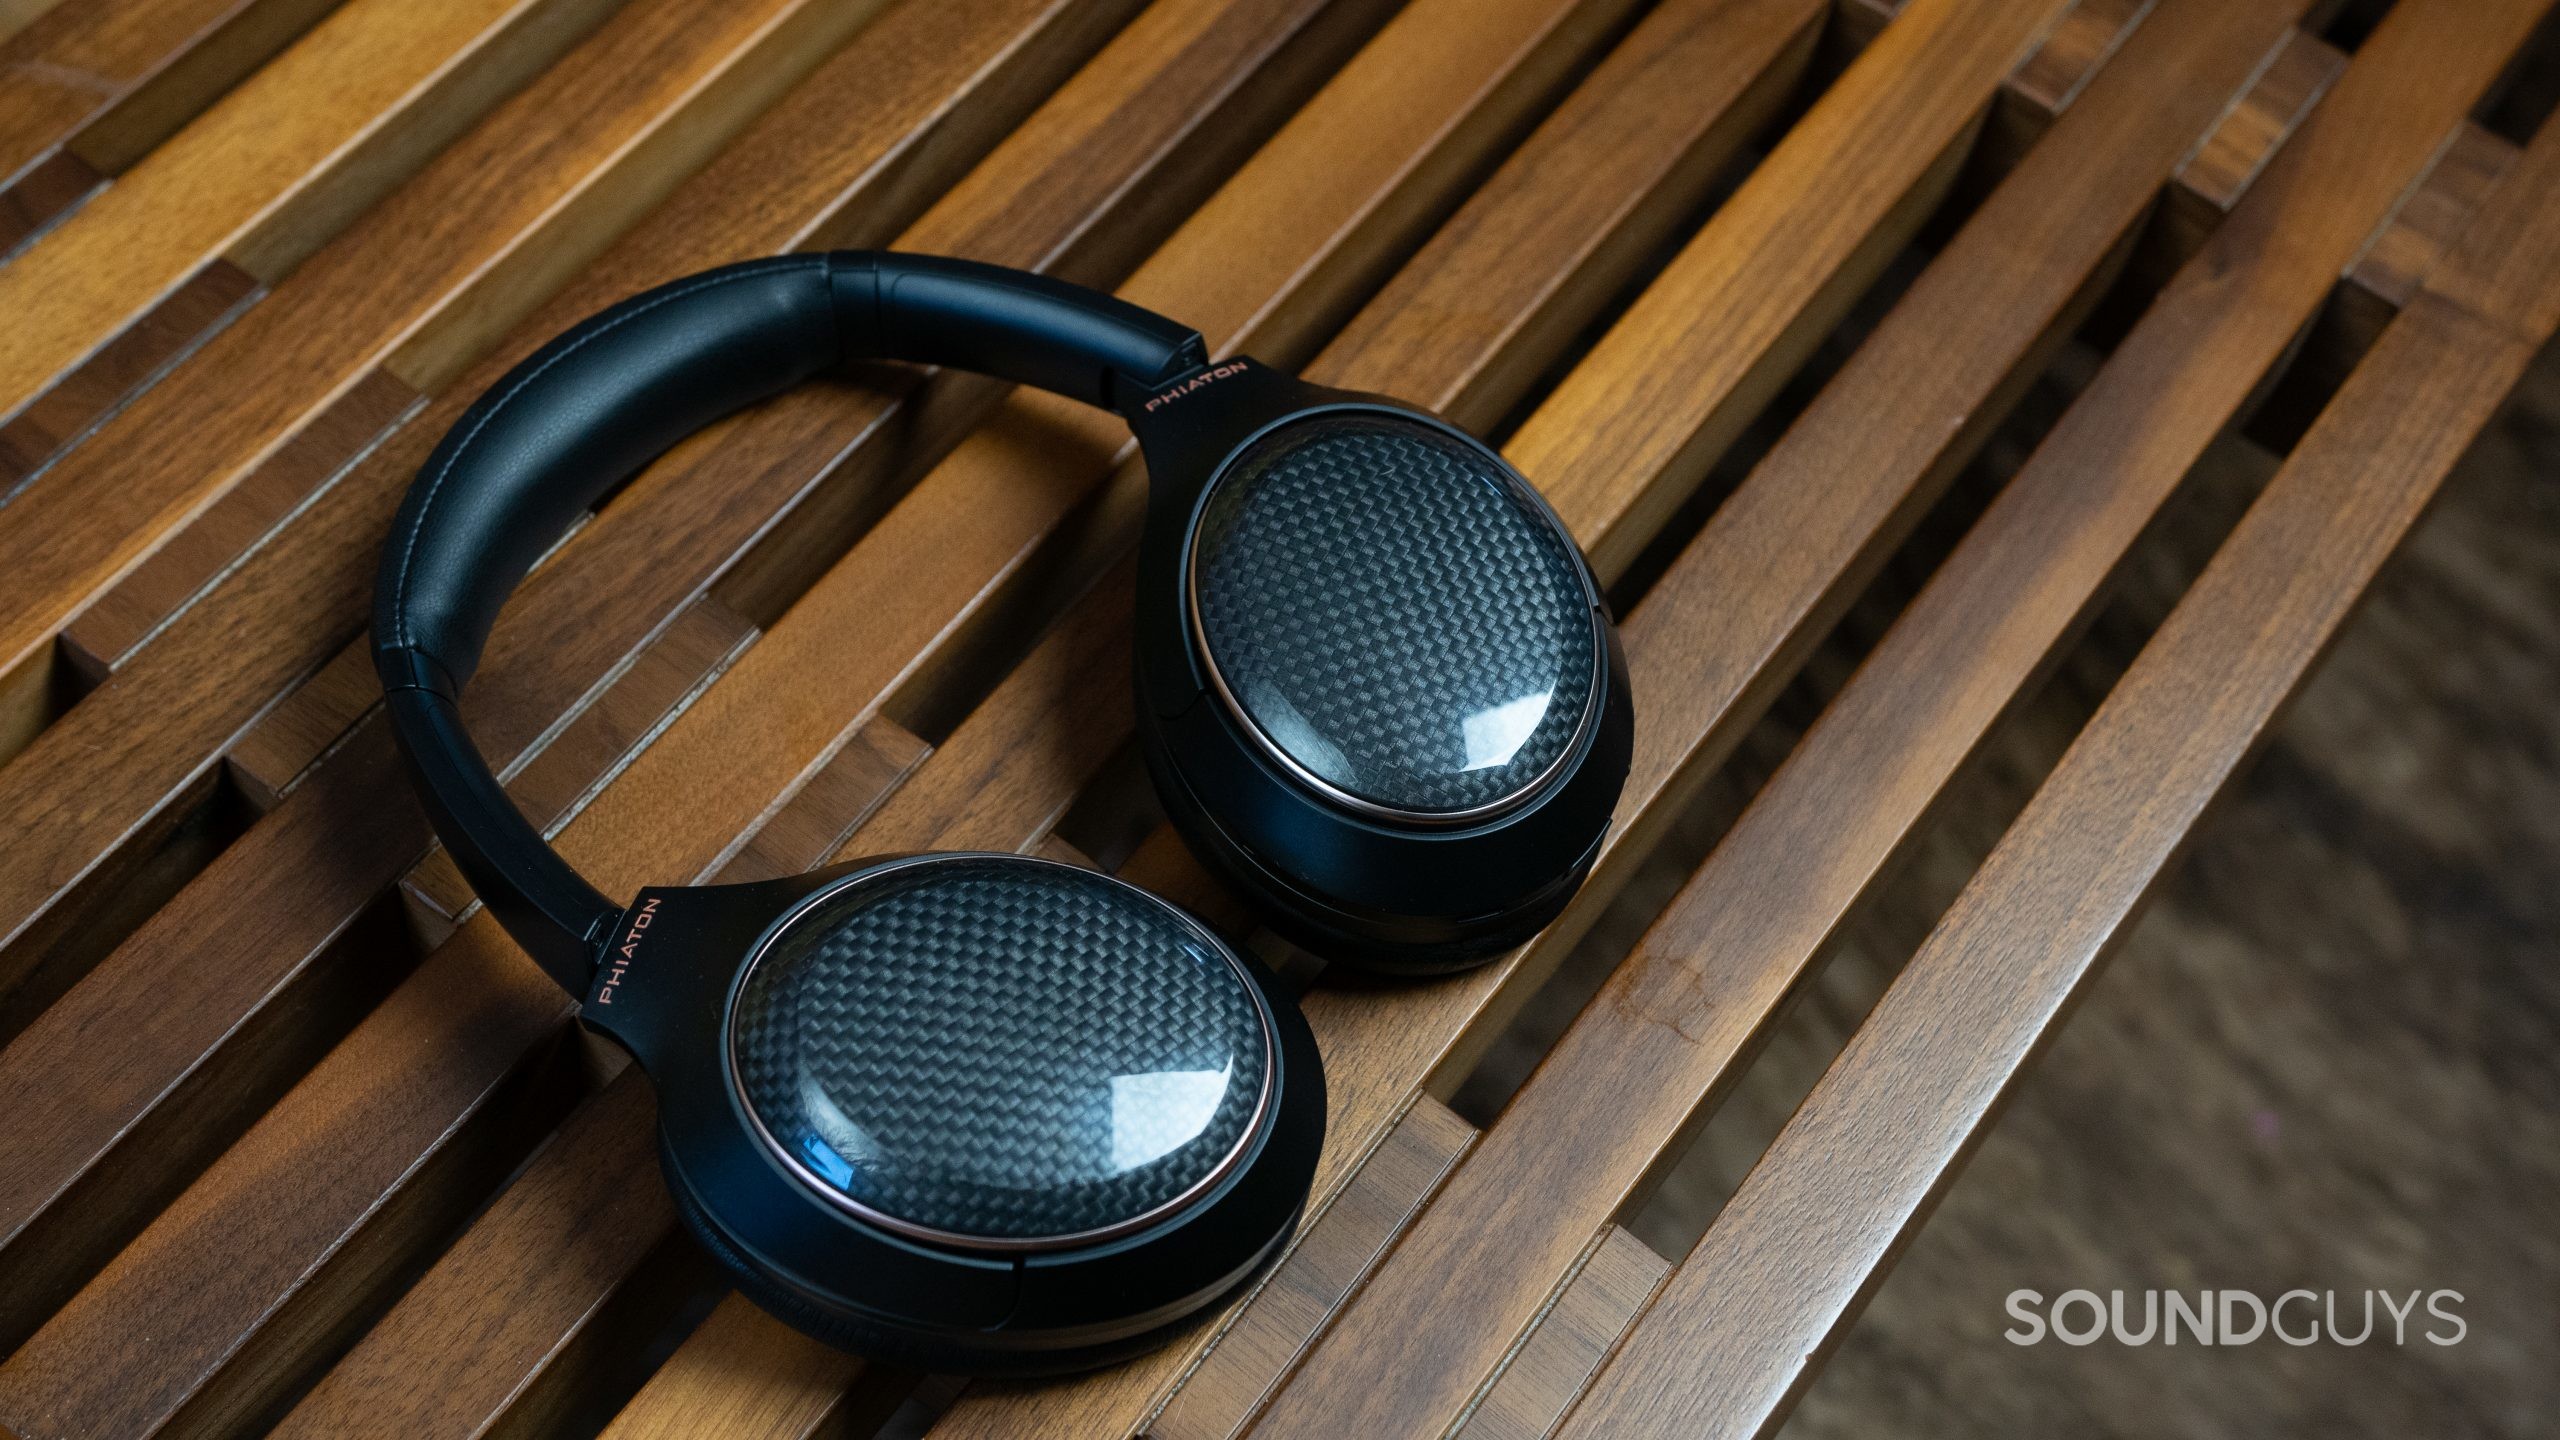 Phiaton 900 Legacy headphones review - SoundGuys